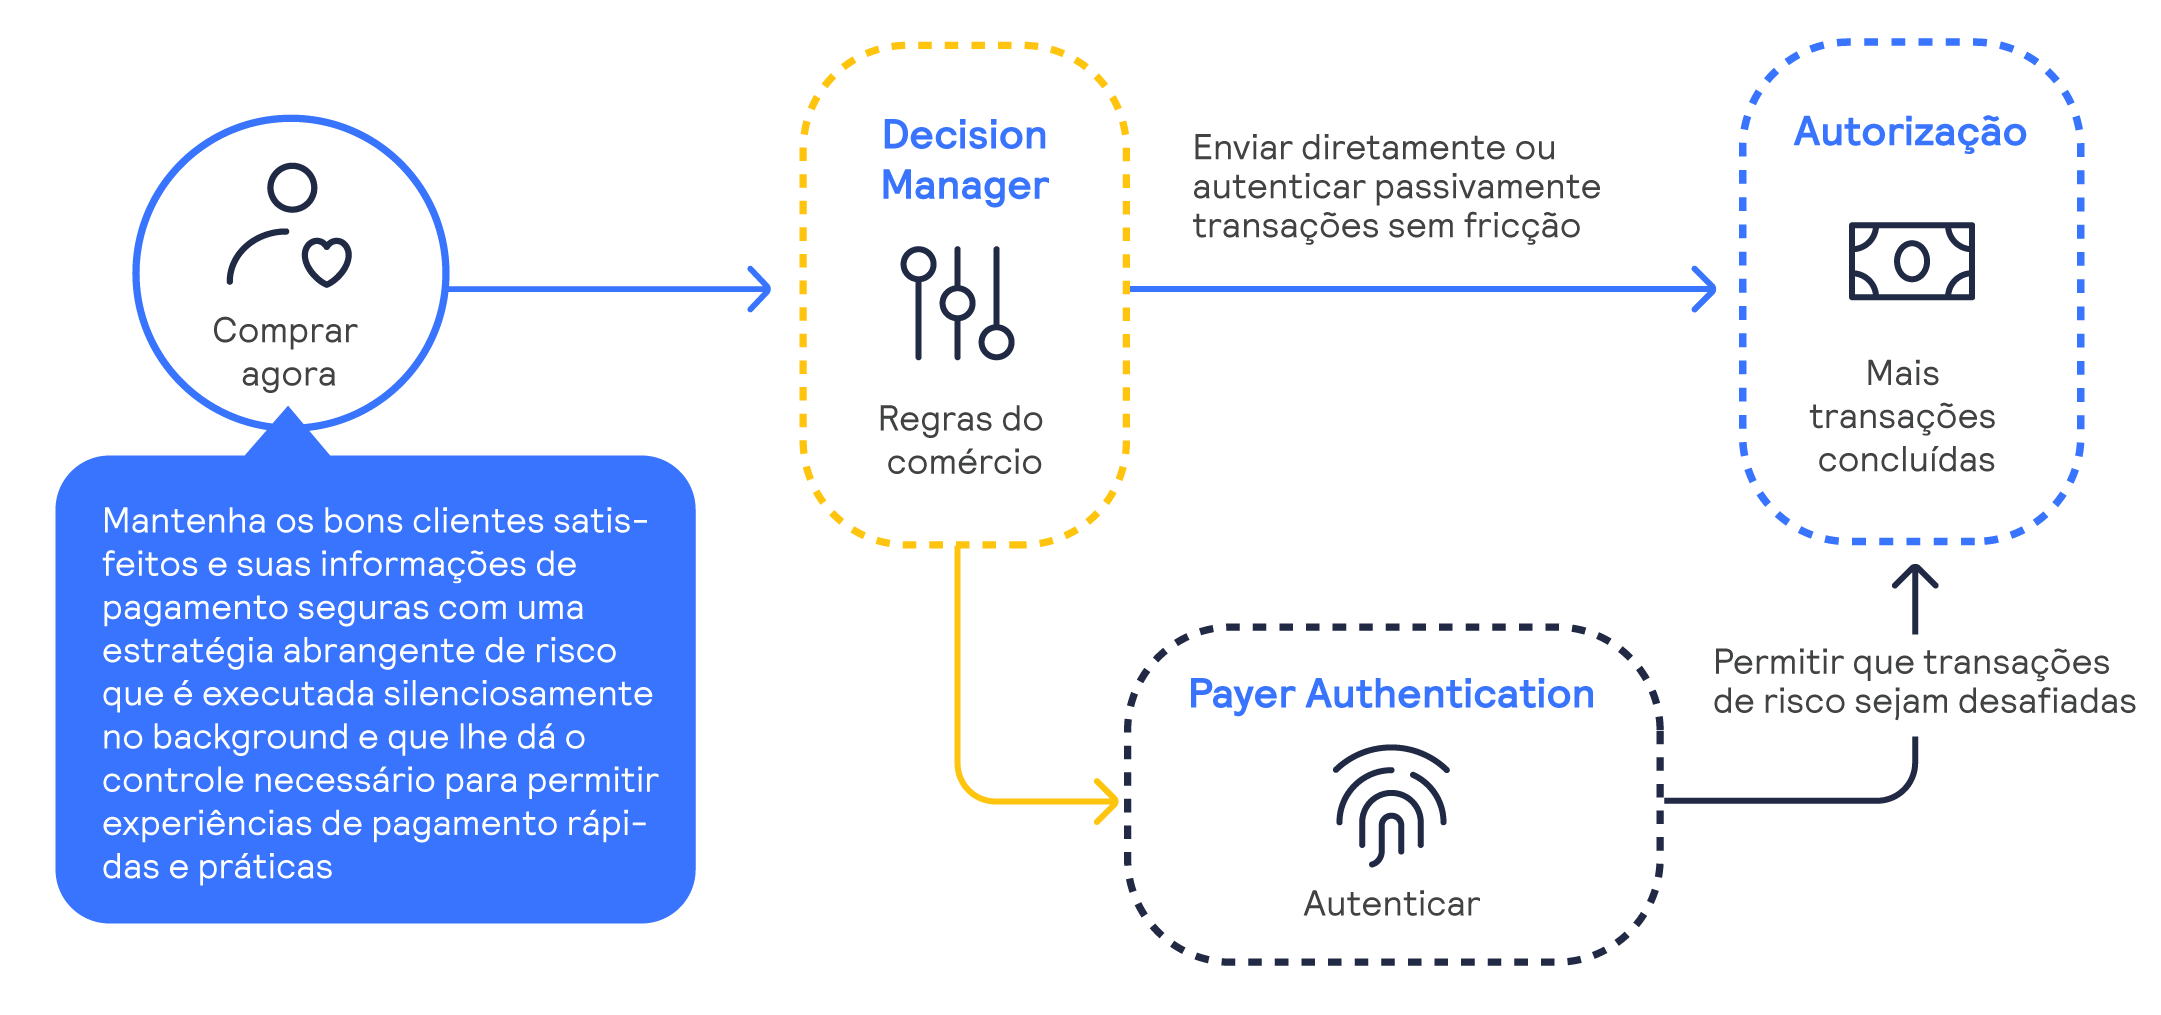 Infográfico do processo de Decision Manager e Payer Authentication